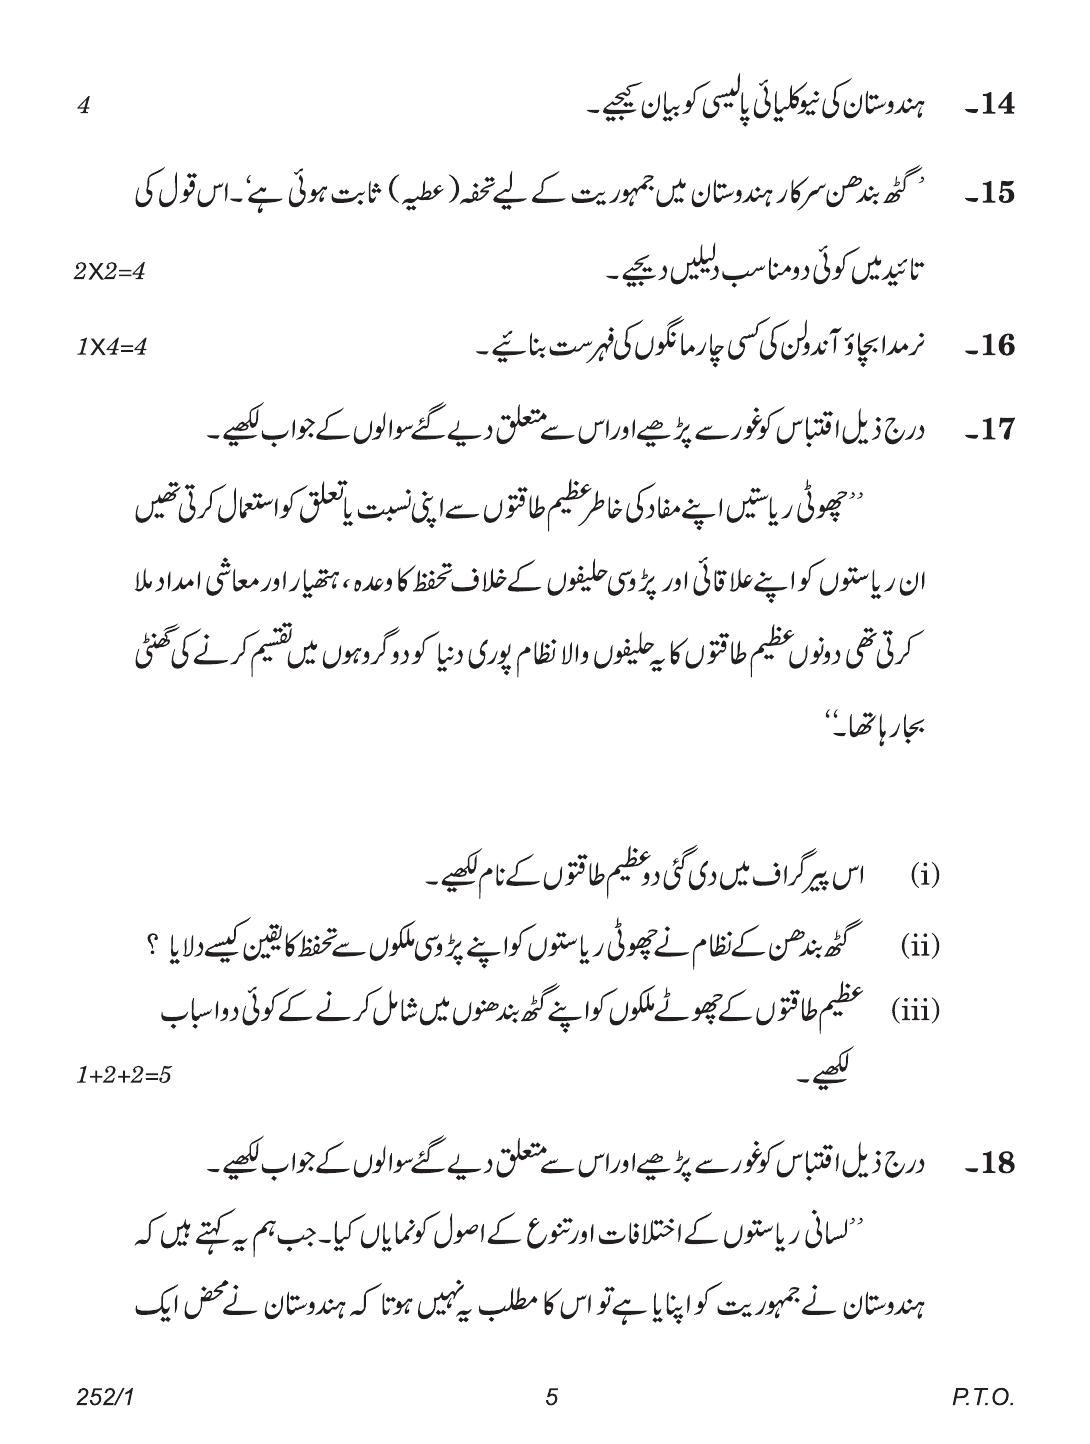 CBSE Class 12 252-1 (Political Science Urdu) 2018 Question Paper - Page 5